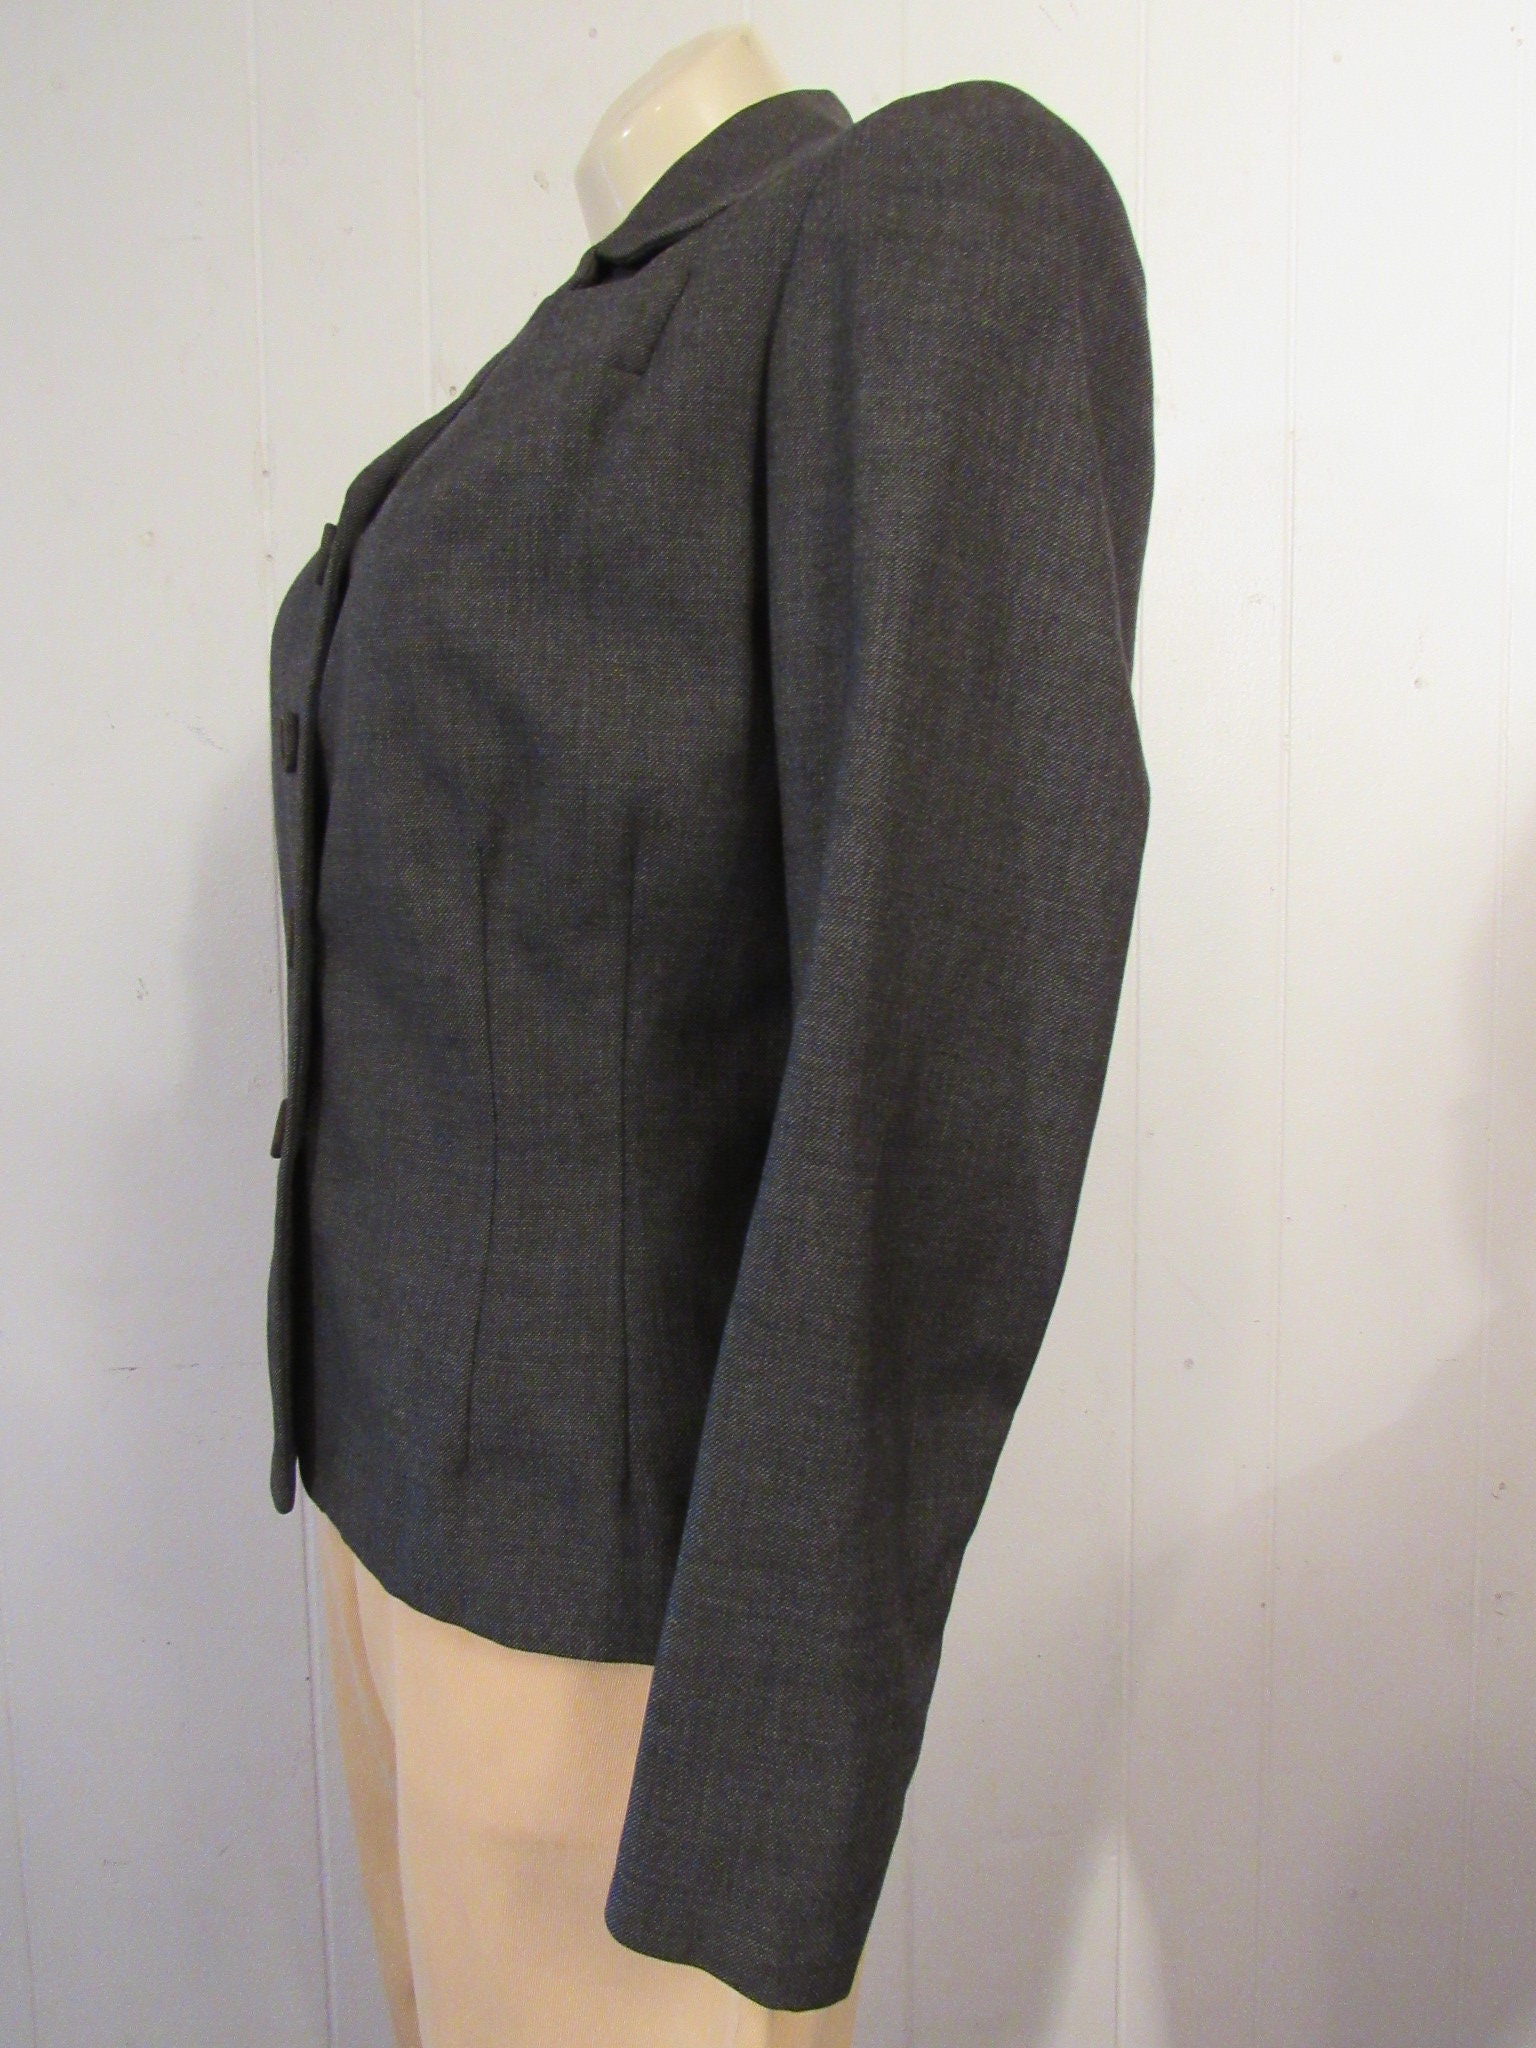 Vintage Jacket 1940s Jacket Gray Jacket Rockabilly Jacket - Etsy